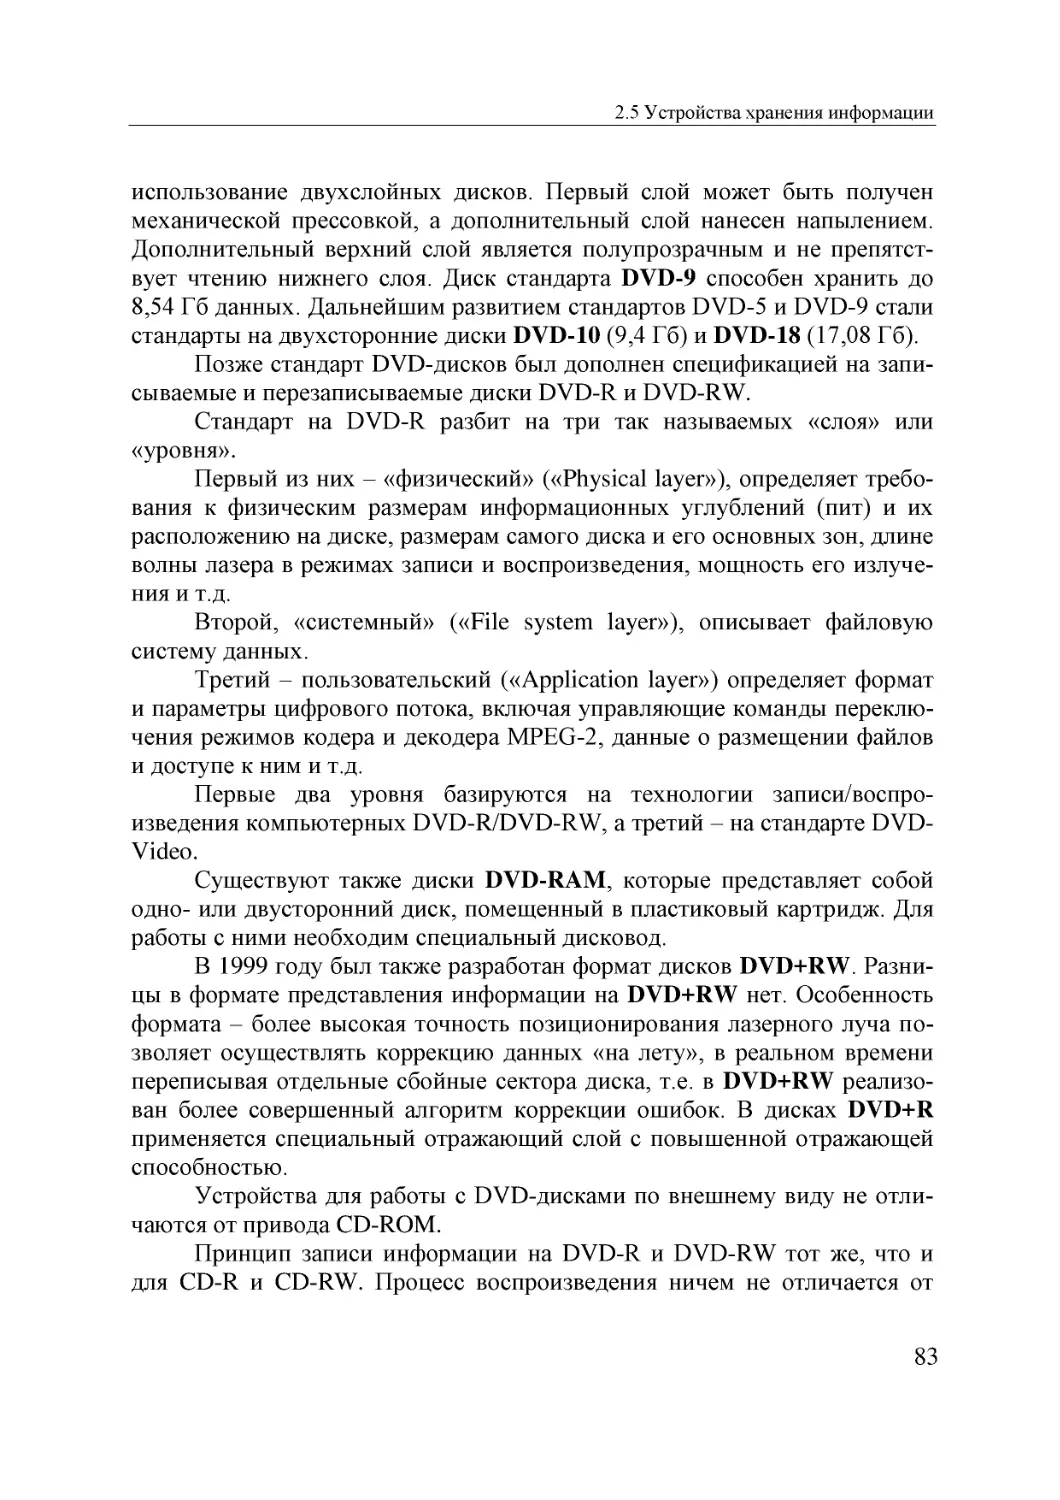 Informatika_Uchebnik_dlya_vuzov_2010 83